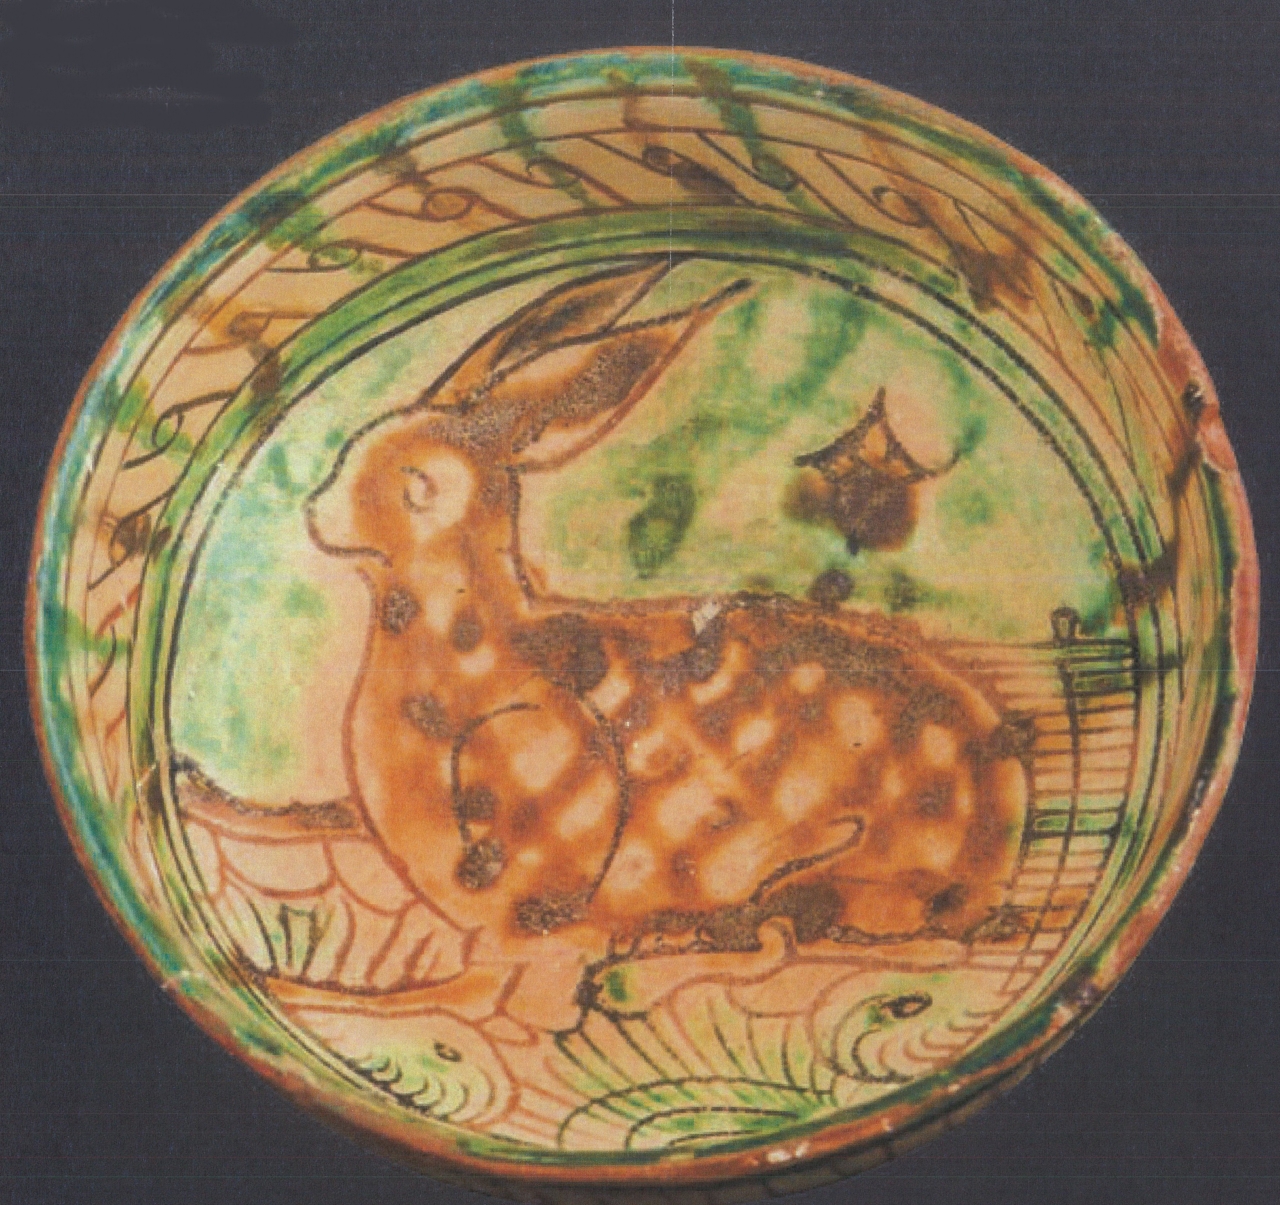 lepre con motivi decorativi geometrici e vegetali (ciotola, opera isolata) - bottega emiliano-romagnola (seconda metà XV)